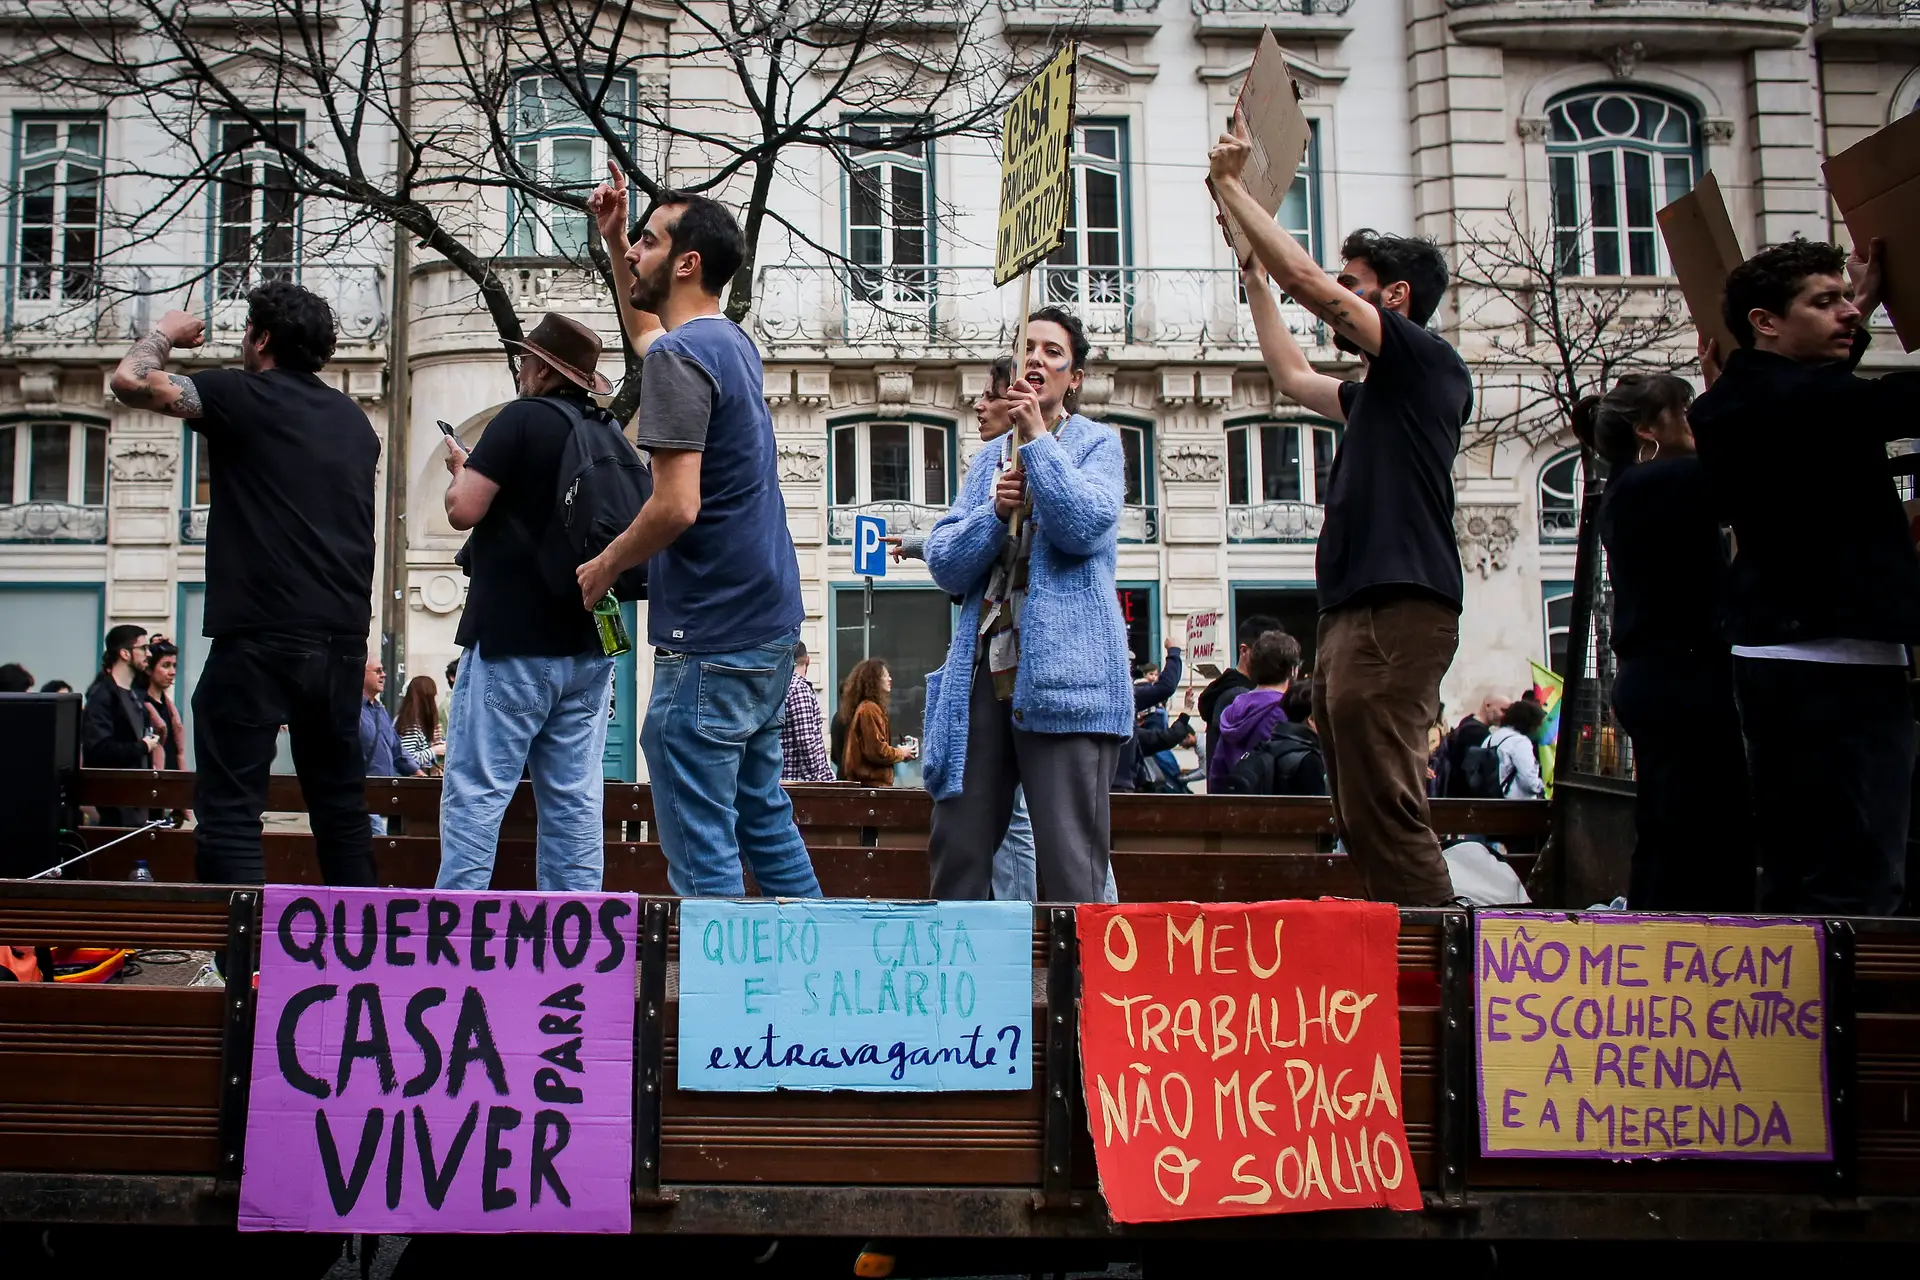 Mateus foi expulso de Lisboa e por isso lidera a manifestação da habitação: reportagem na capital, onde "Solidariedade" é a palavra de ordem